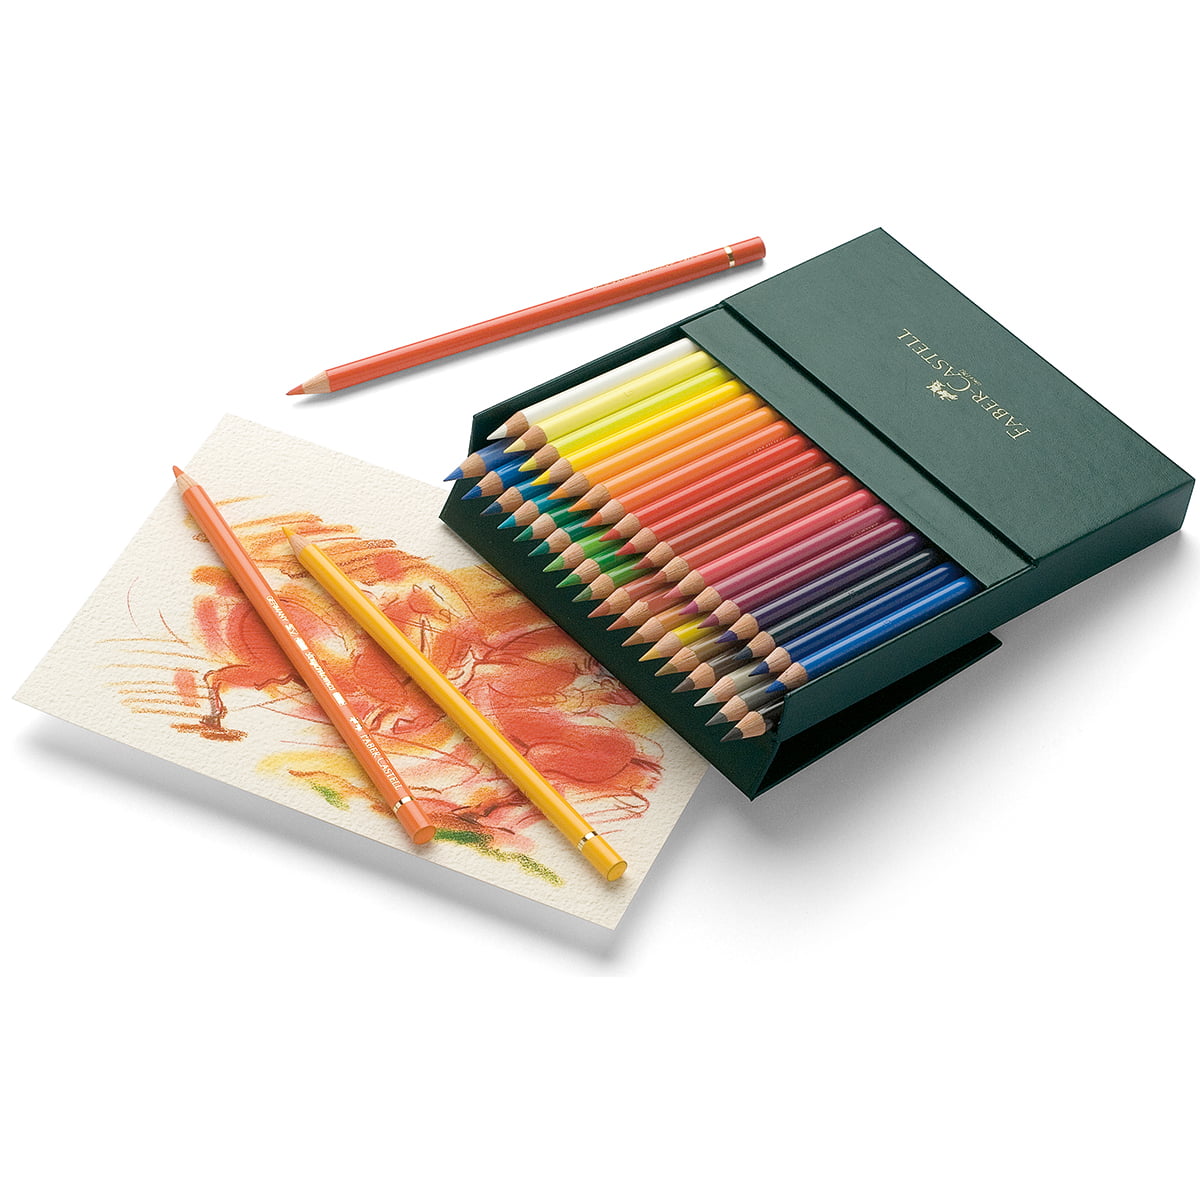 Faber-Castell Polychromos colored pencils review – Veronica